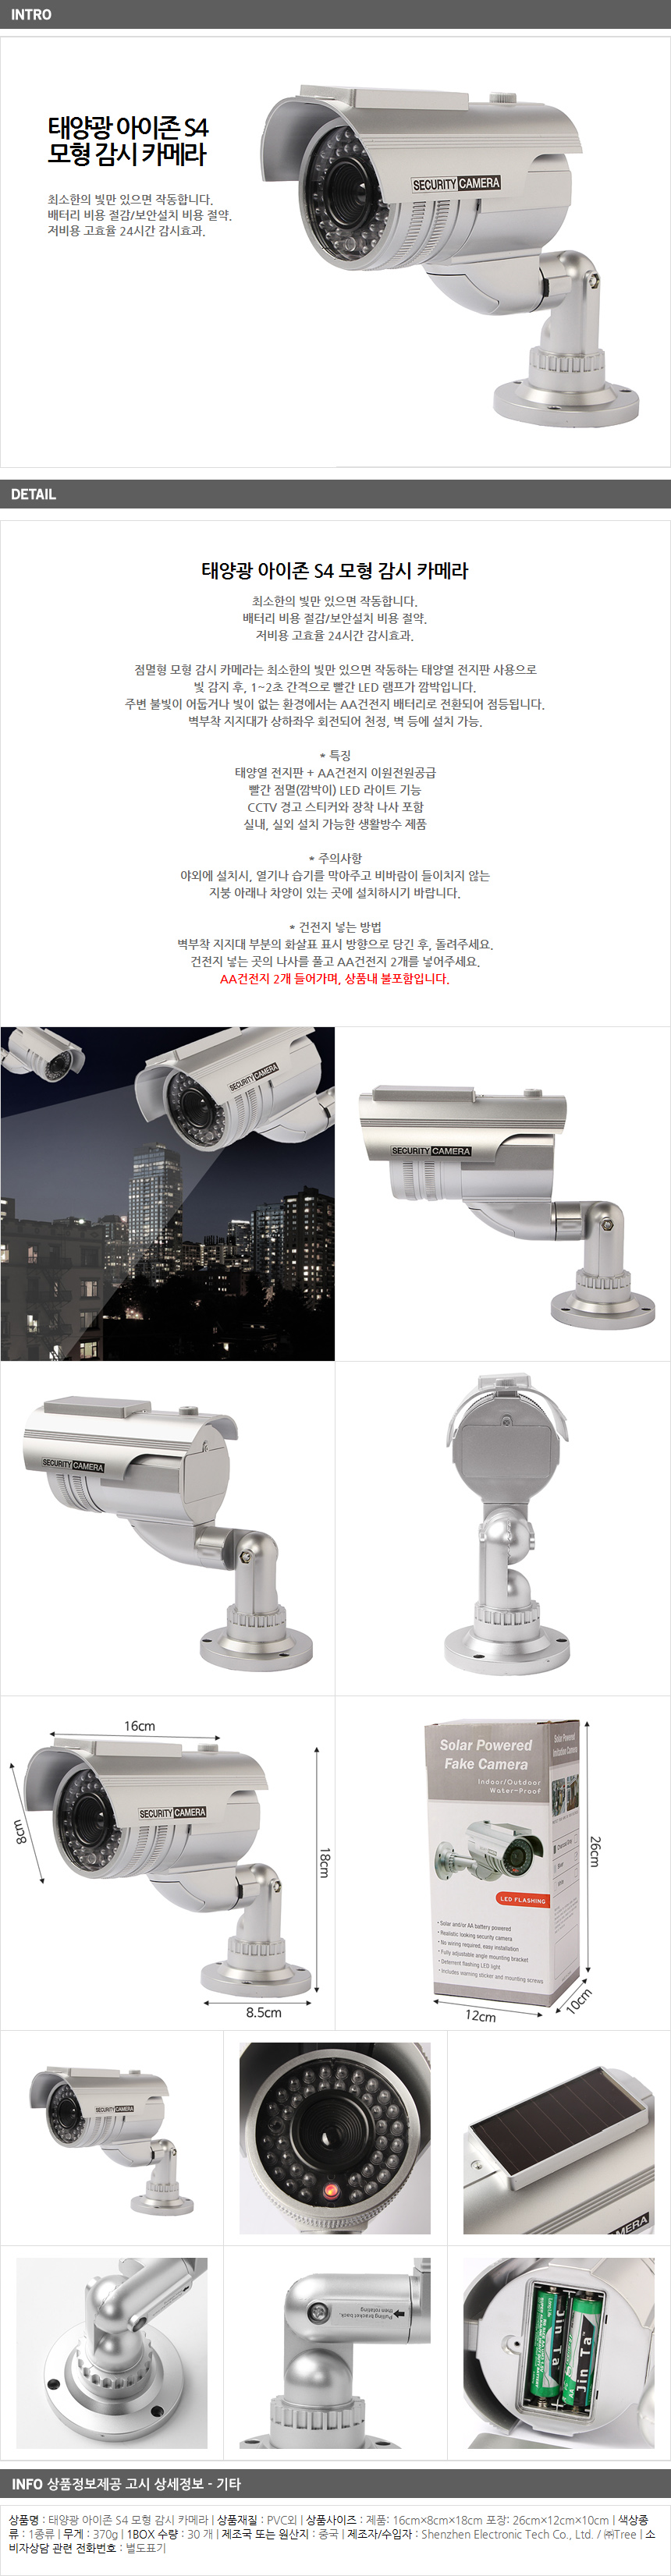 태양열 S4 모형 감시 카메라/회사 모형CCTV 방범